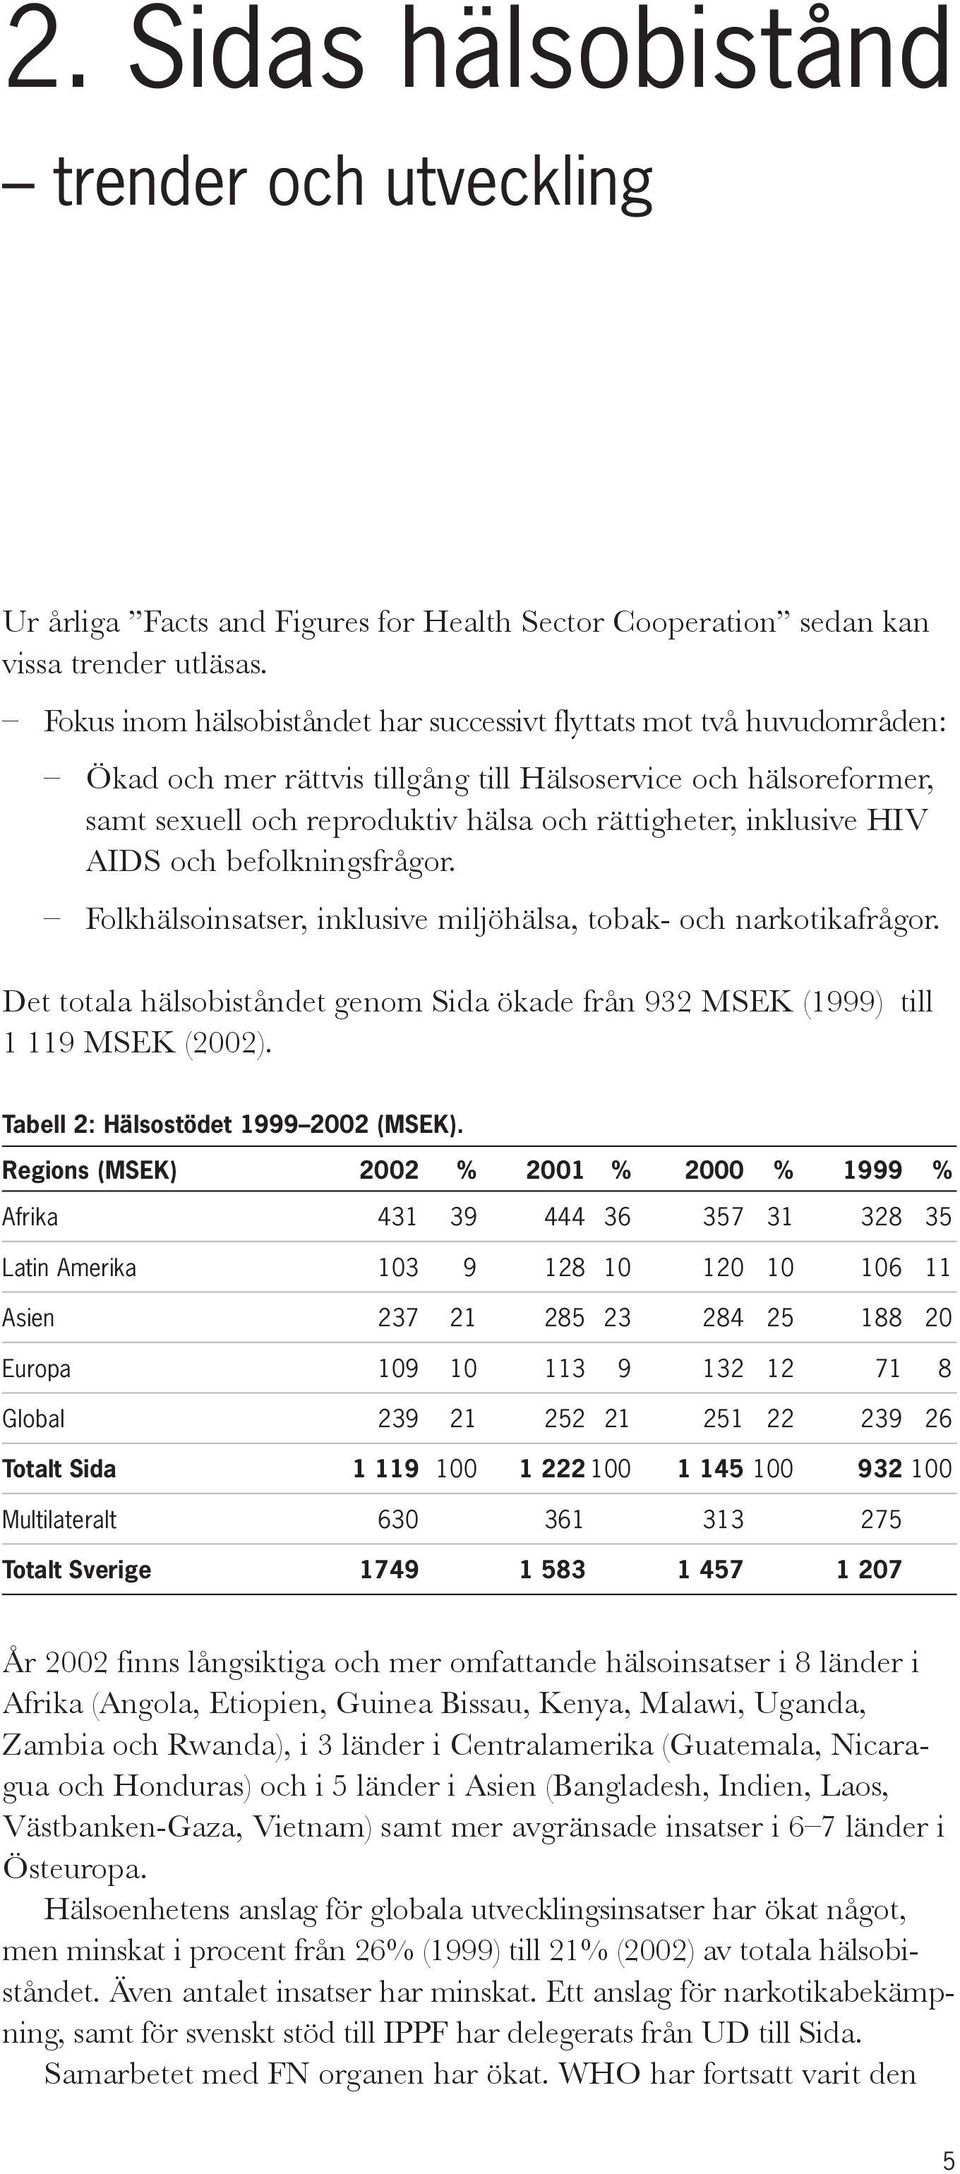 inklusive HIV AIDS och befolkningsfrågor. Folkhälsoinsatser, inklusive miljöhälsa, tobak- och narkotikafrågor. Det totala hälsobiståndet genom Sida ökade från 932 MSEK (1999) till 1 119 MSEK (2002).